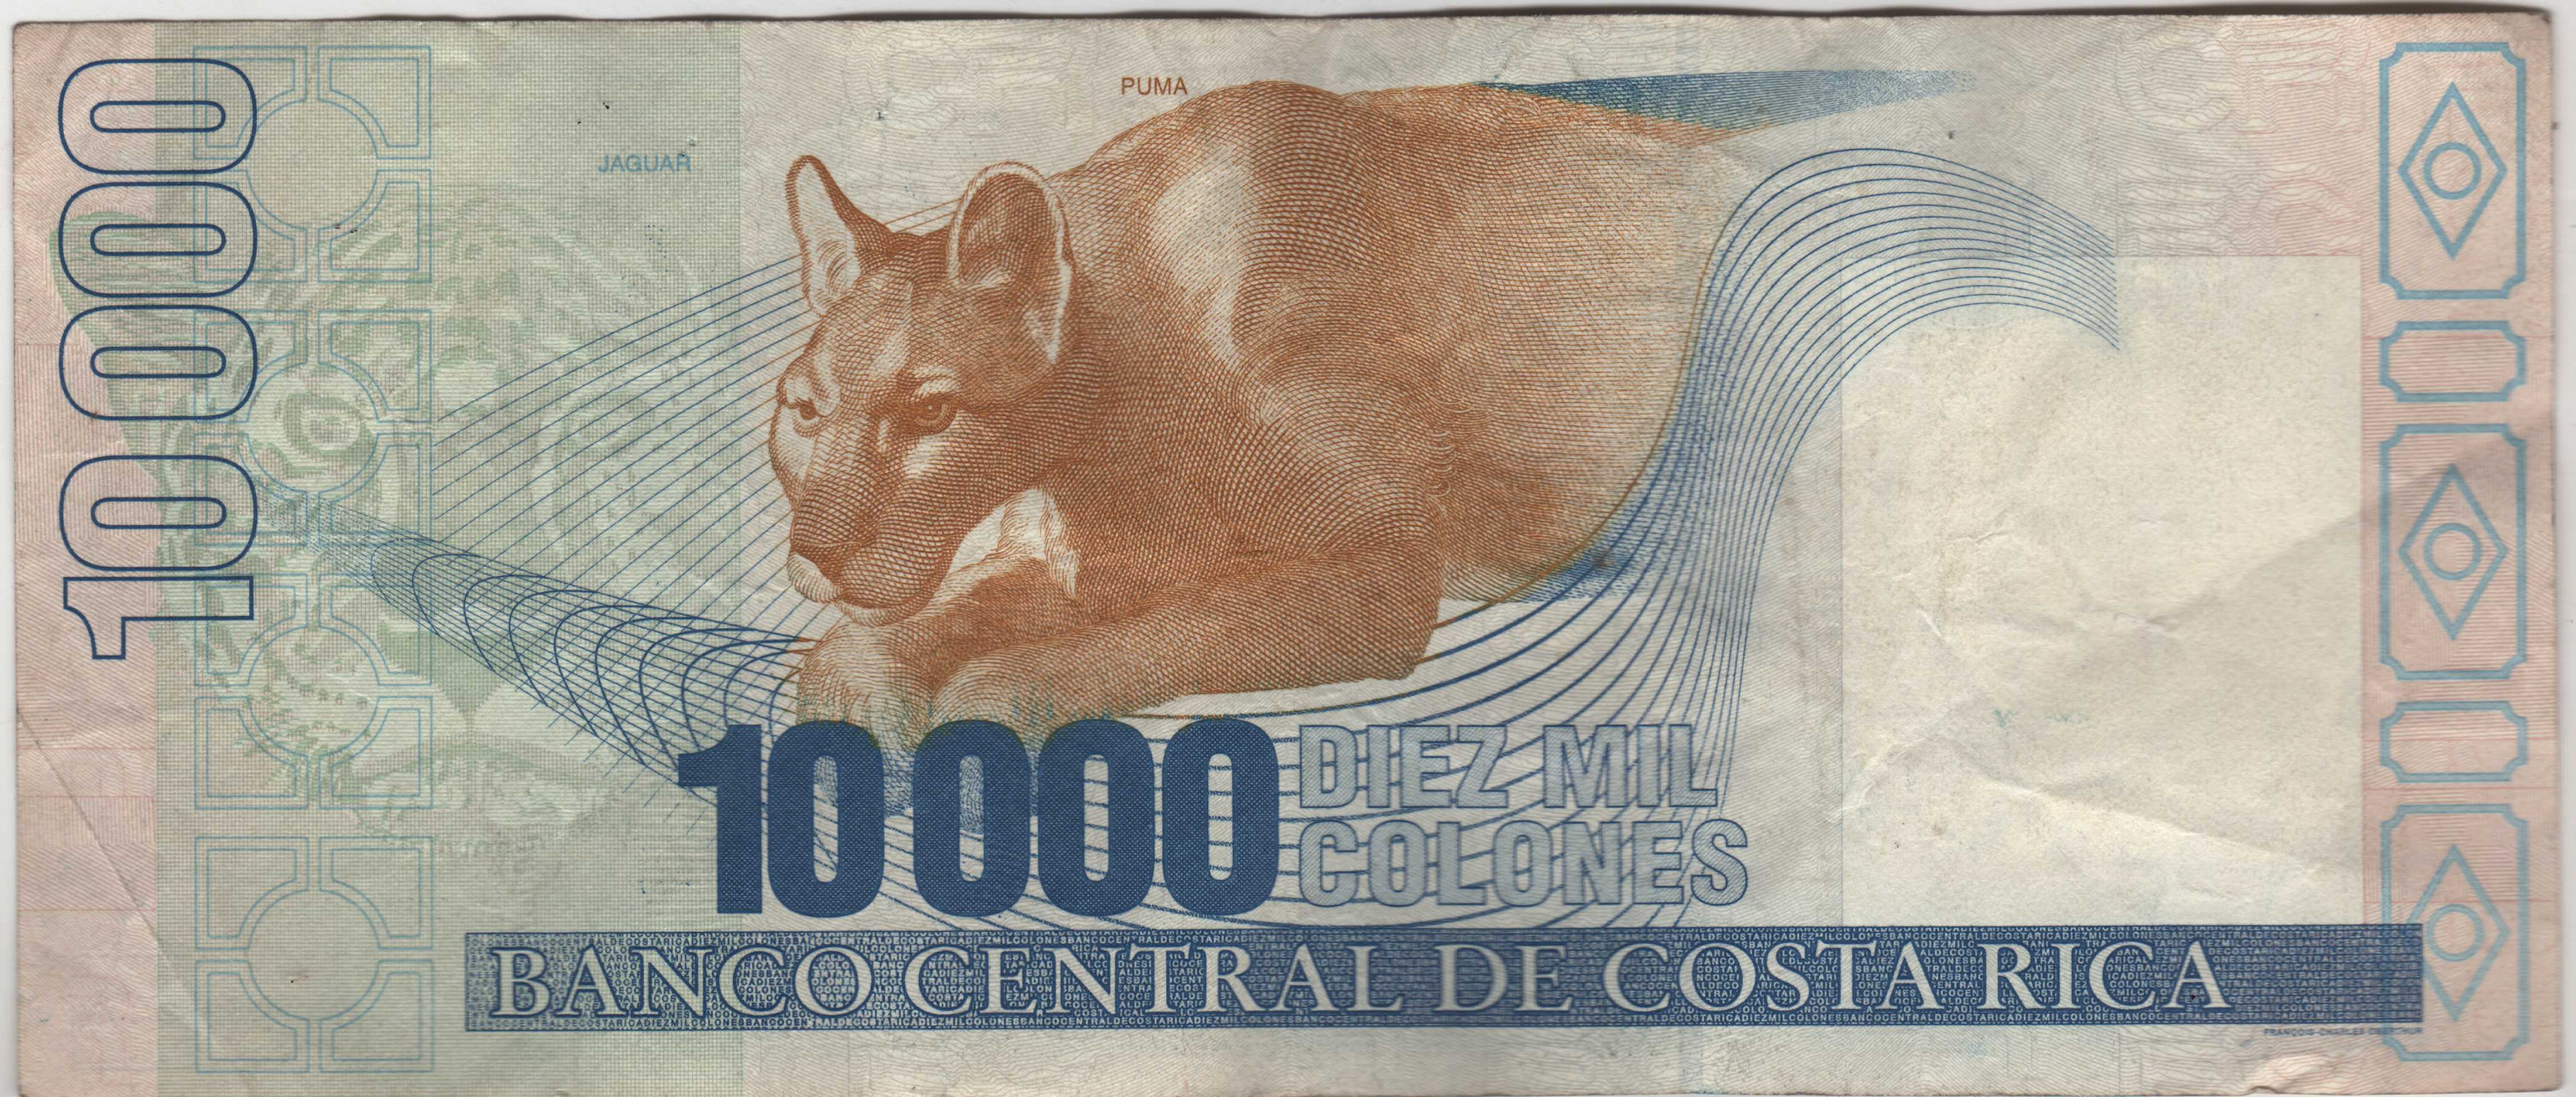 Billete de 10000 colones Costa Rica REVERSO